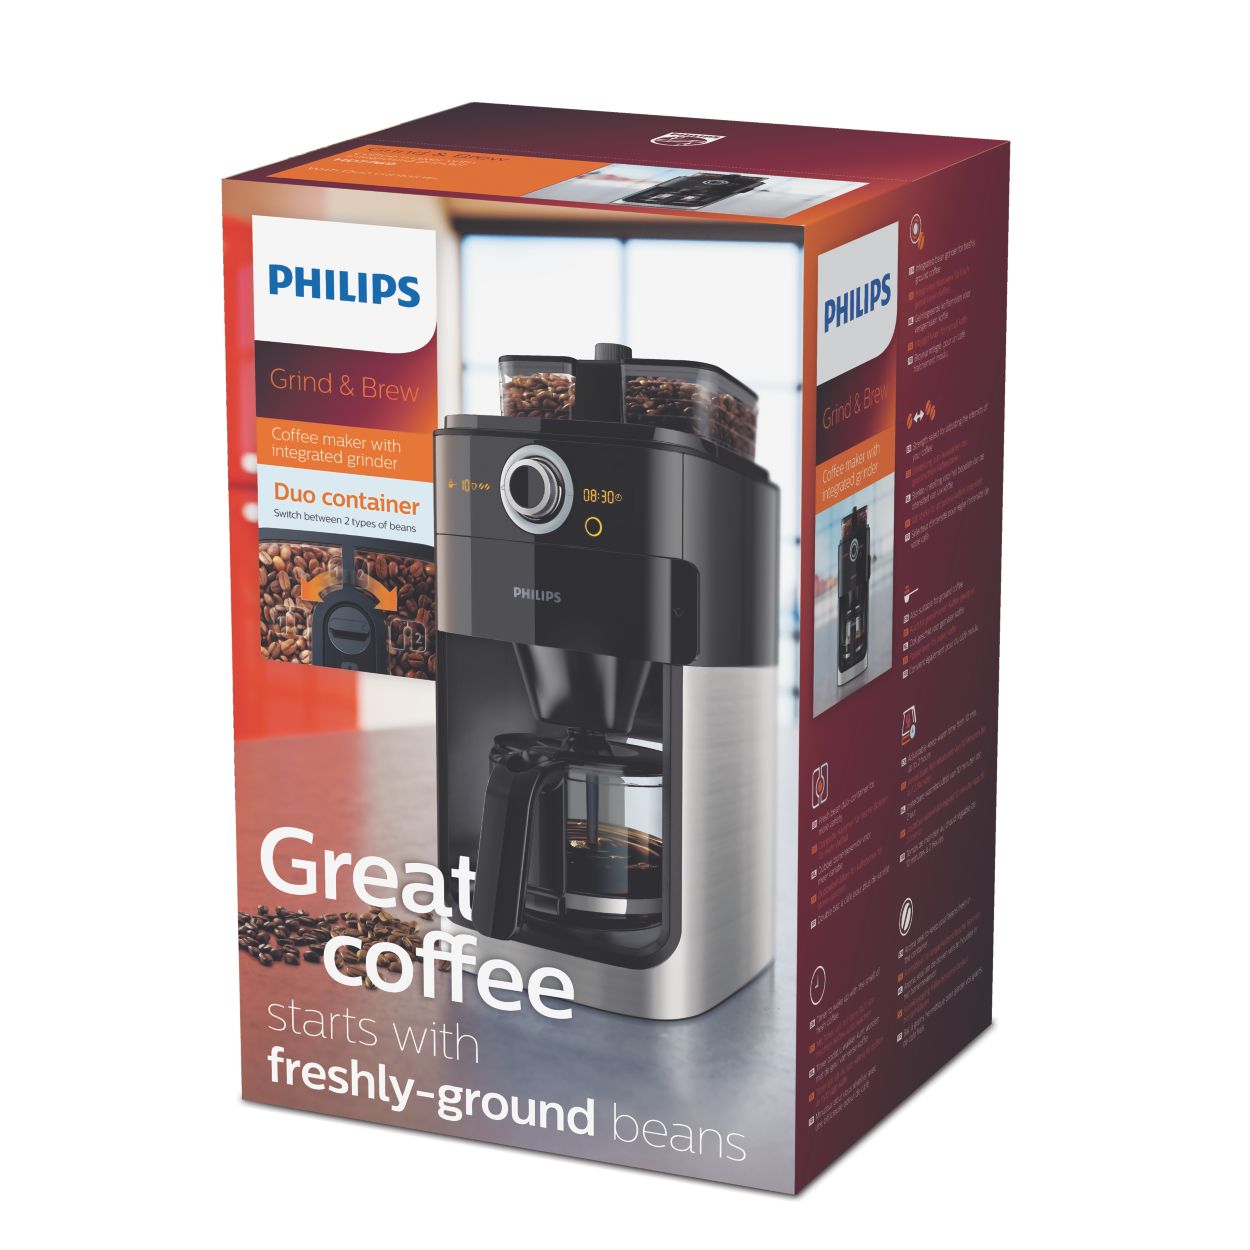 Philips cafetière filtre avec broyeur intégré grind & brew hd7769/00 -  Conforama